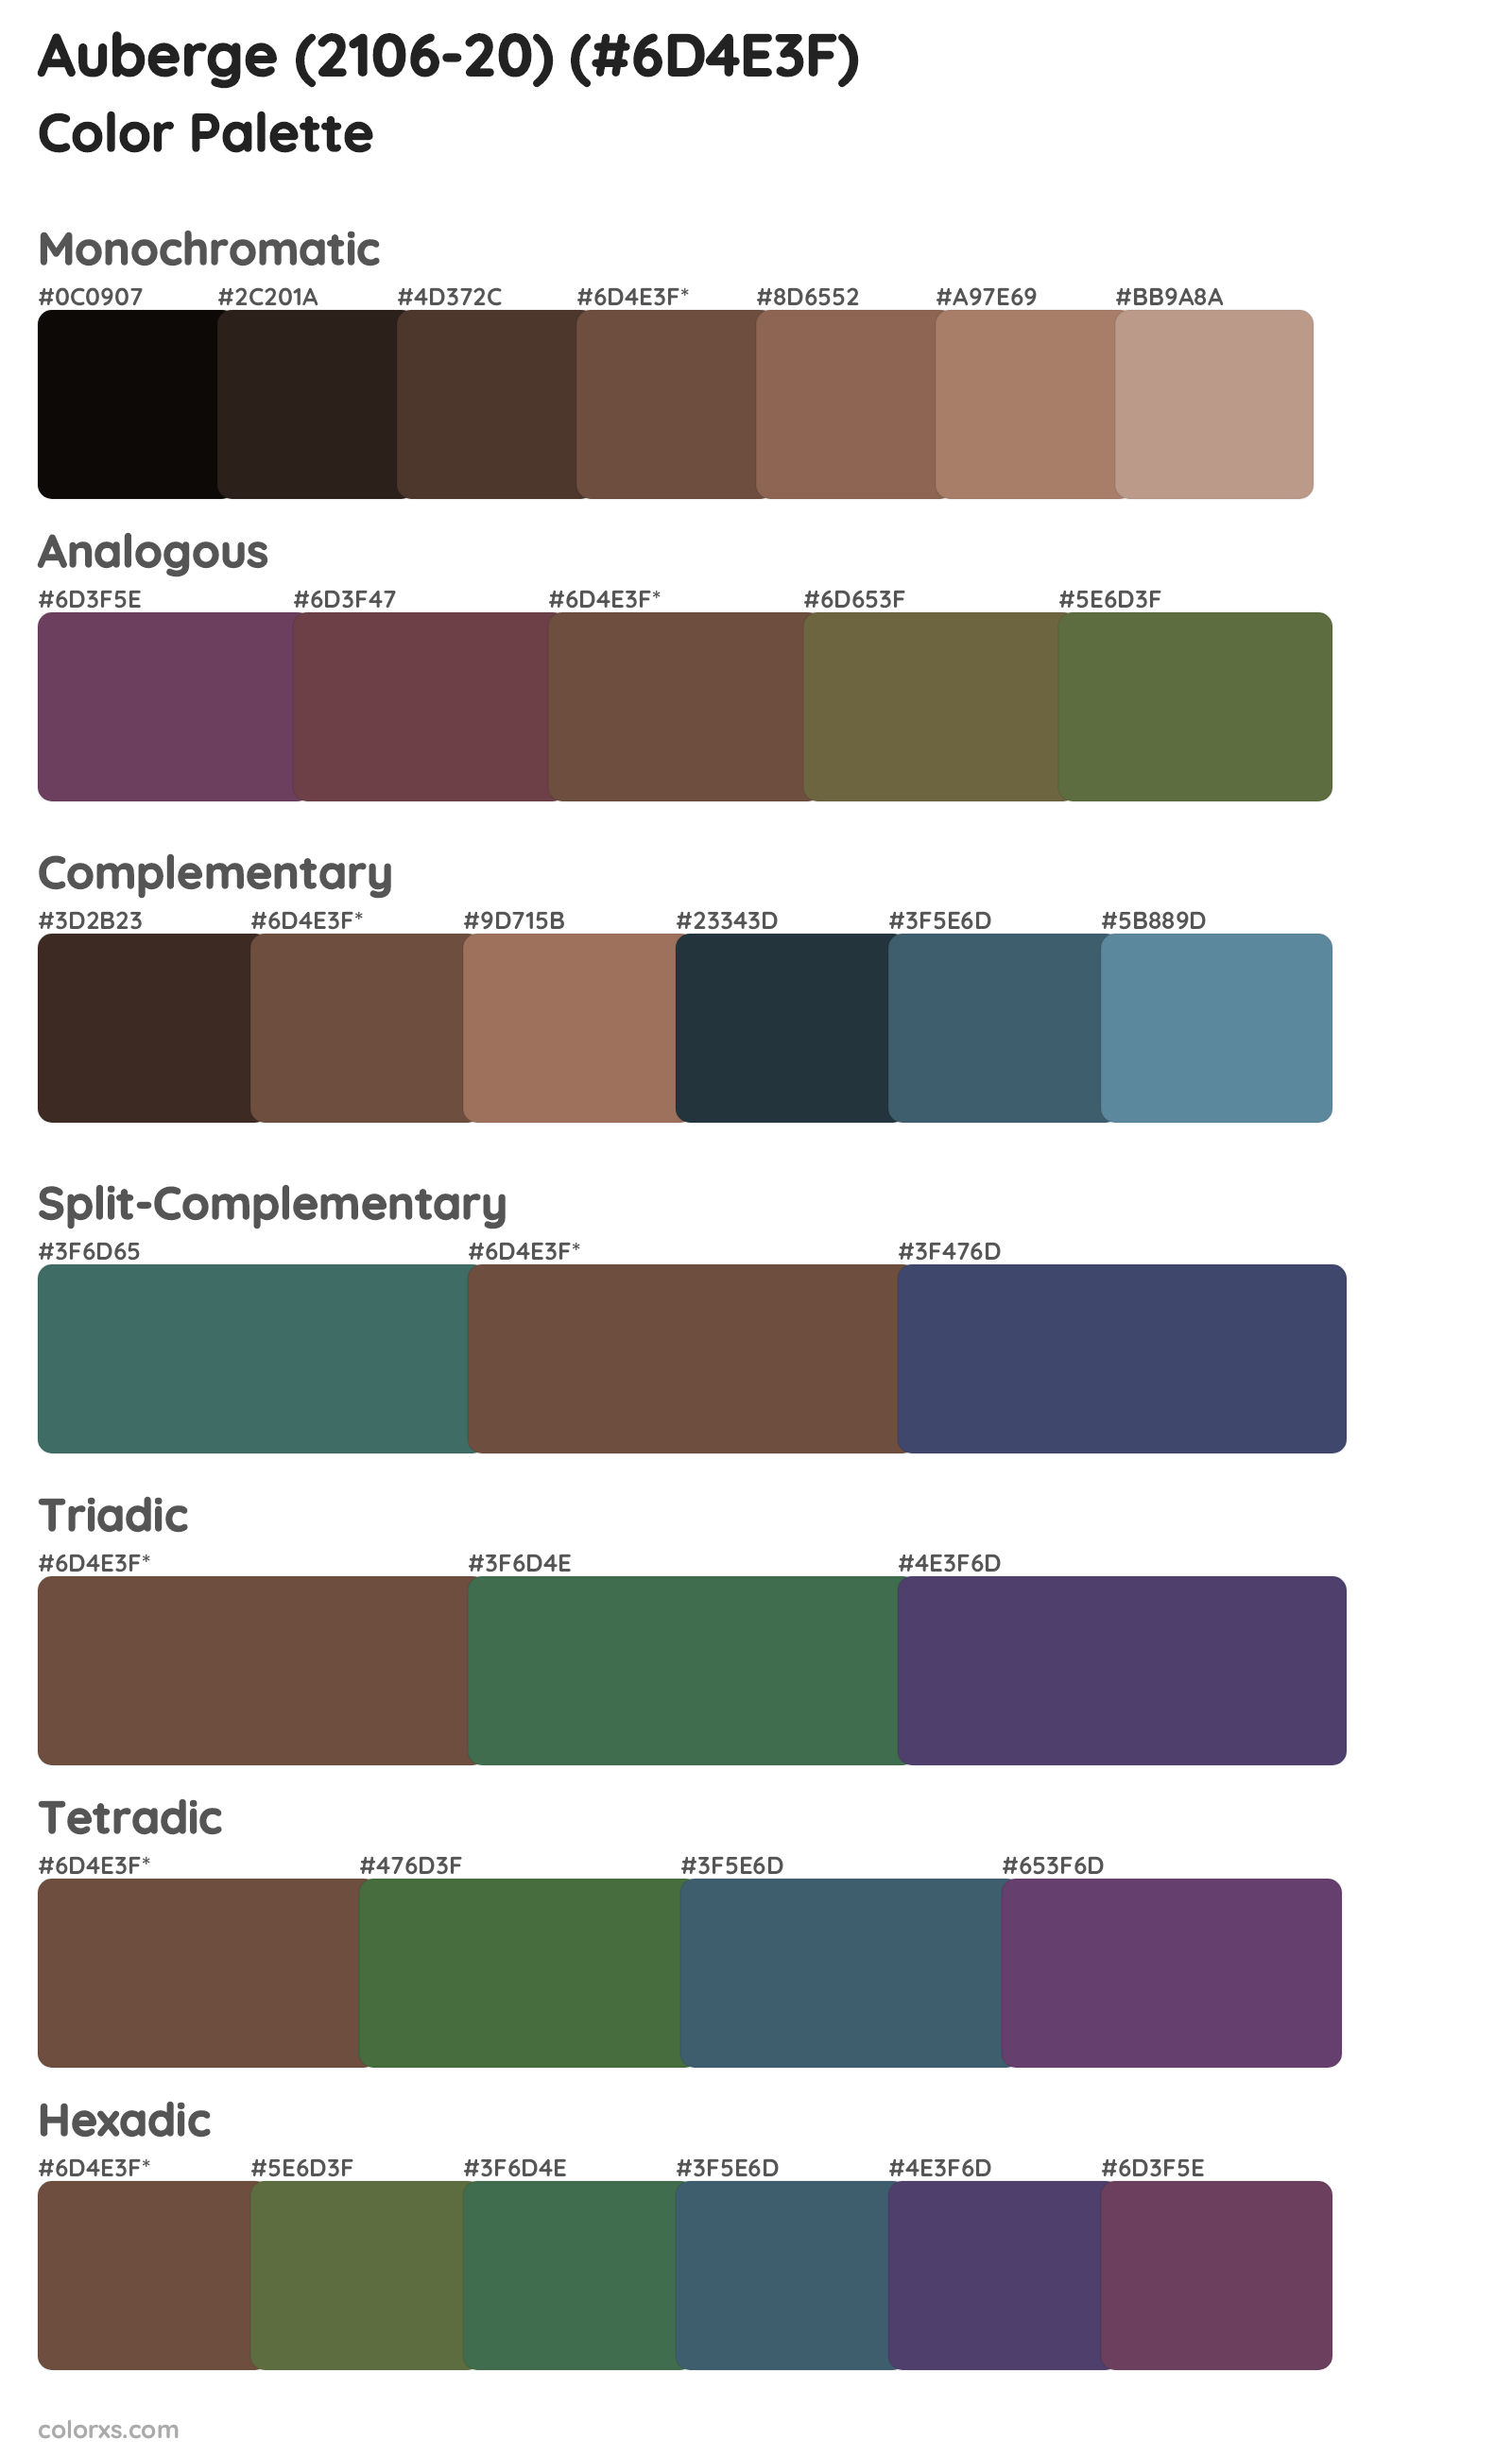 Auberge (2106-20) Color Scheme Palettes